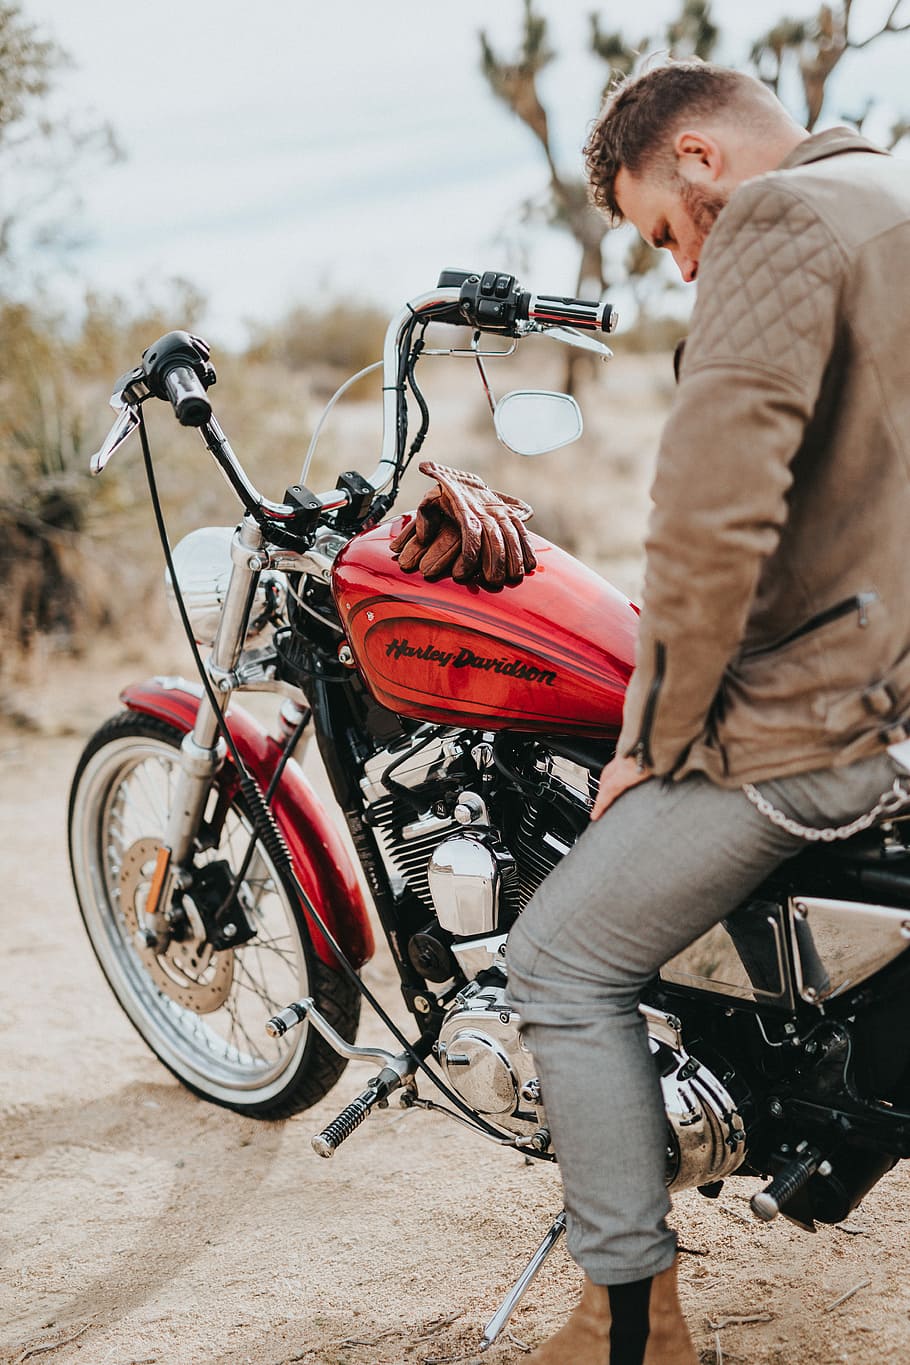 man sits on red and black Harley-Davidson motorcycle during daytime, man riding cruiser motorcycle